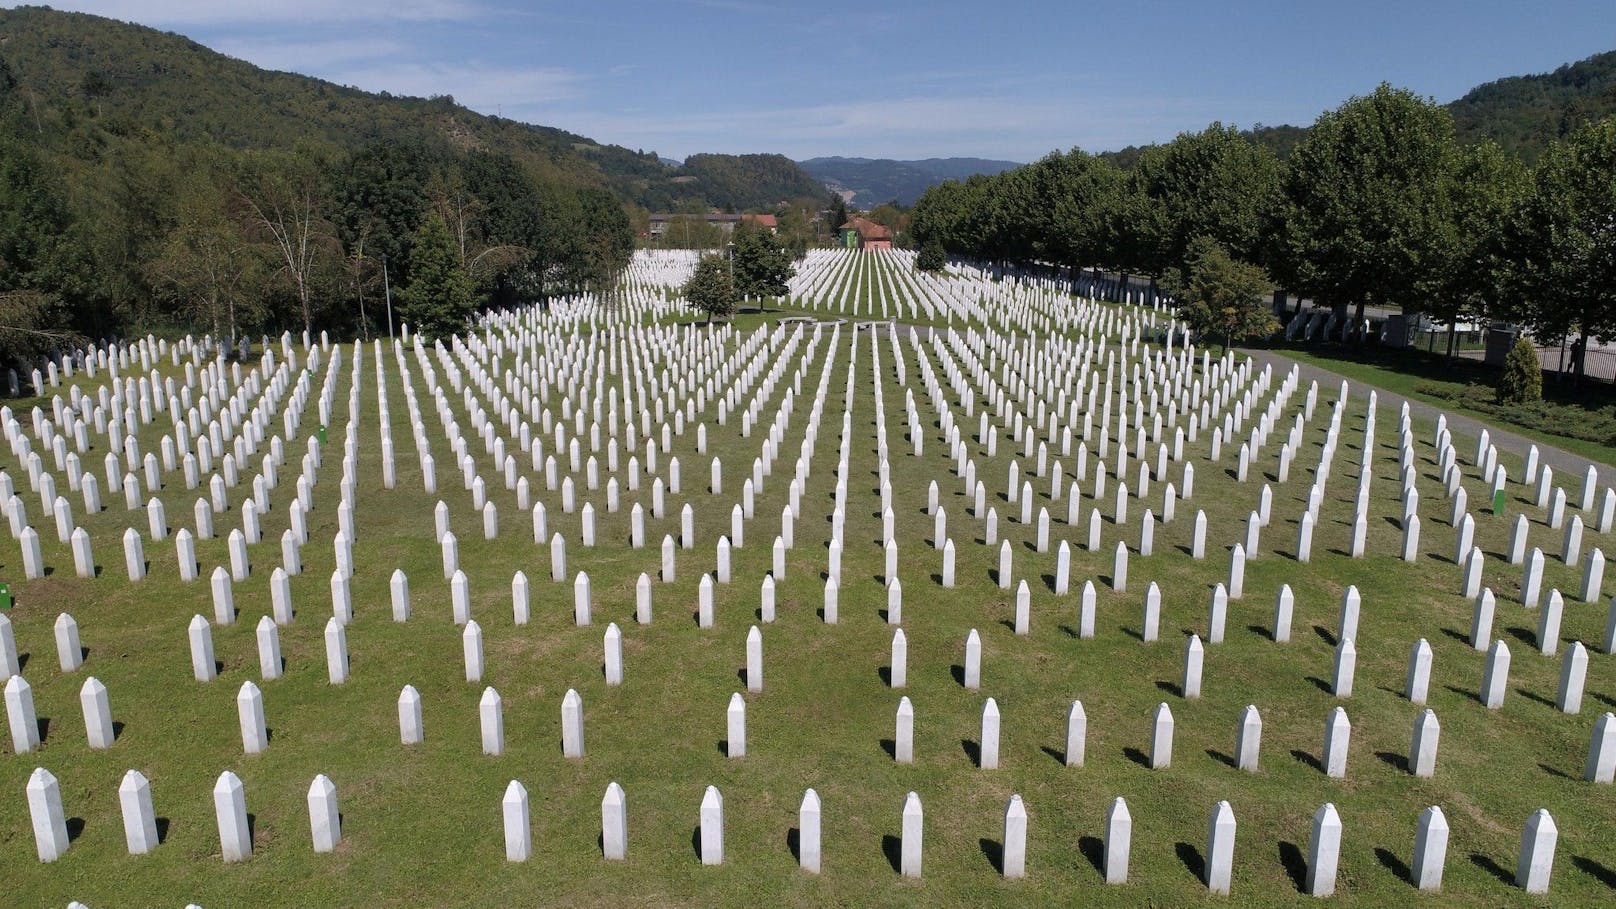 Die bosnisch-serbische Armee ermordete im Sommer 1995 etwa 8.000 bosnisch-muslimische Jungen und Männer.